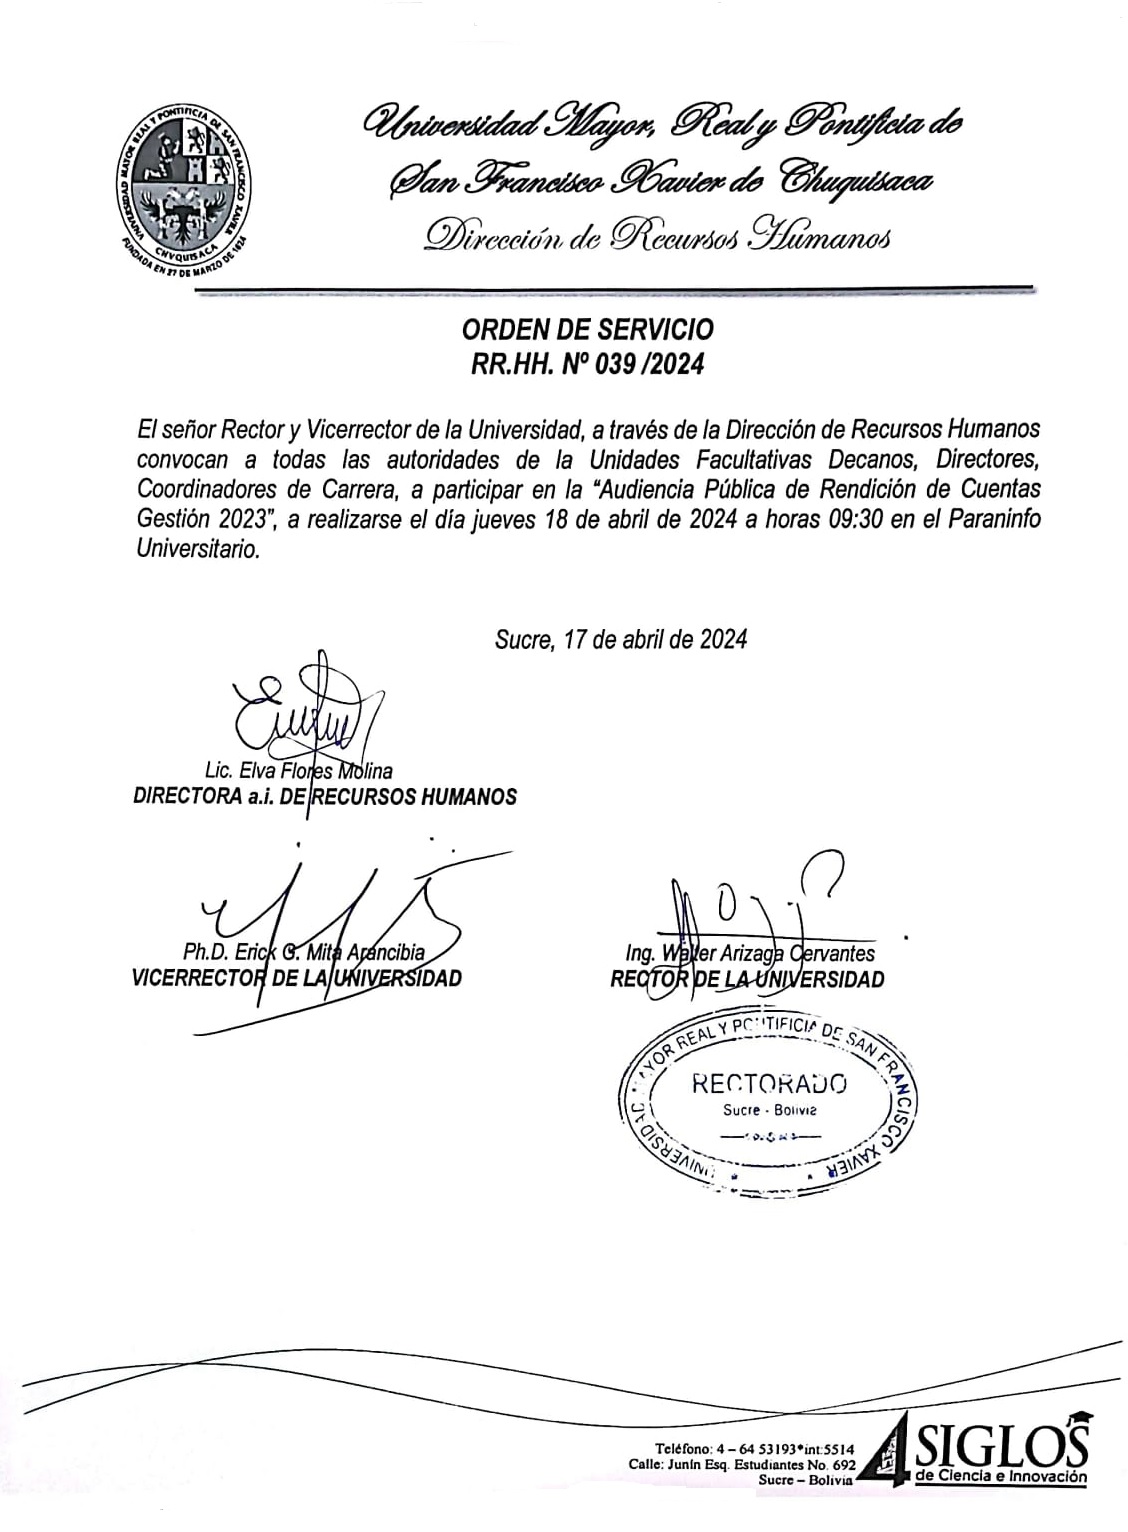 ORDEN DE SERVICIO RR.HH. Nº 039/2024, AUDIENCIA PUBLICA DE RENDICIÓN DE CUENTAS GESTIÓN 2023